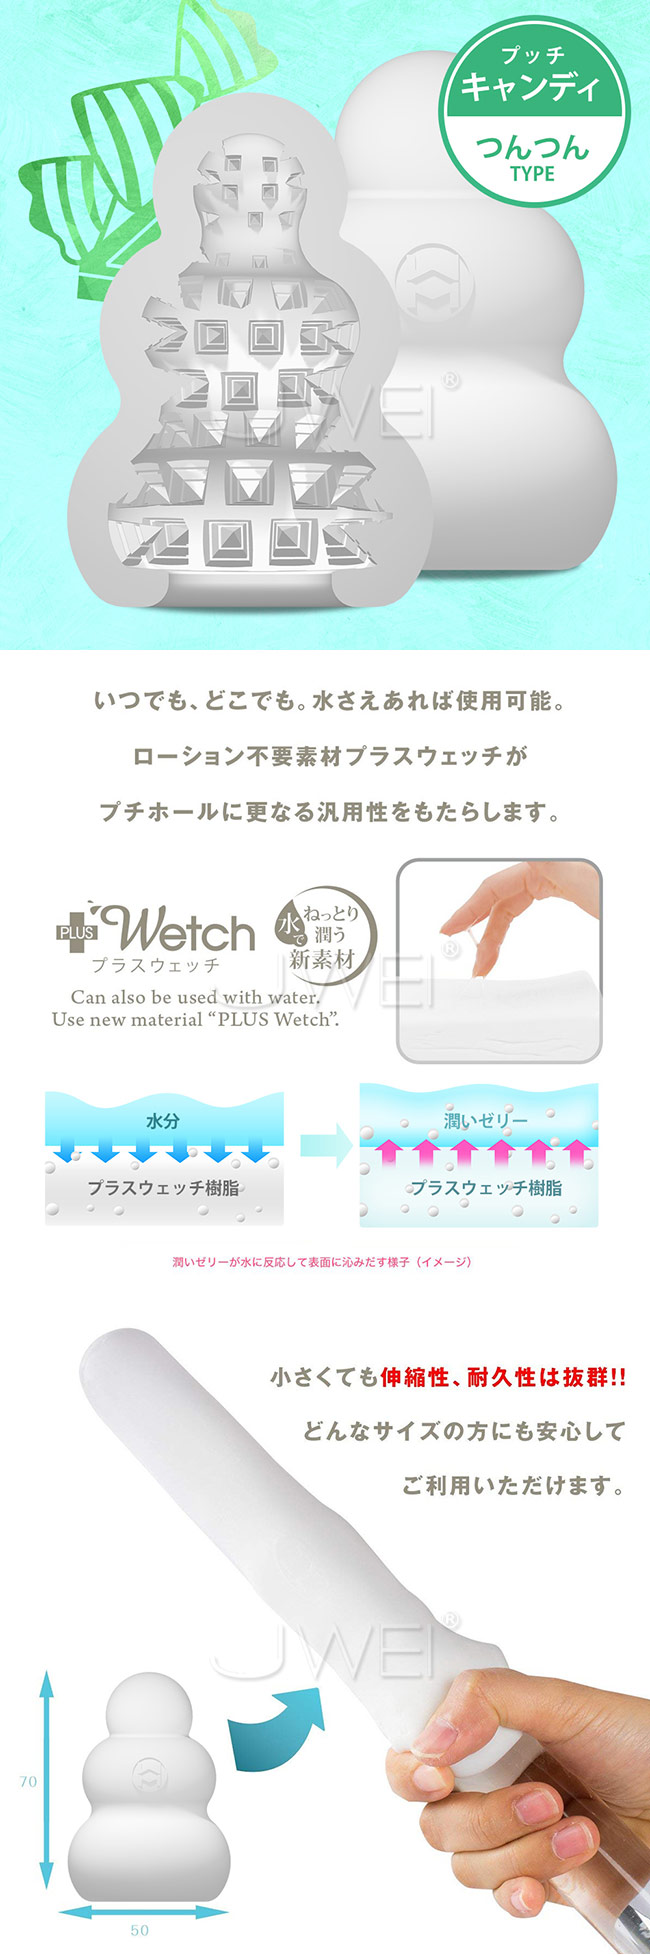 日本原裝進口Mans Max．Pucchi  便攜型口袋自慰器-Candy